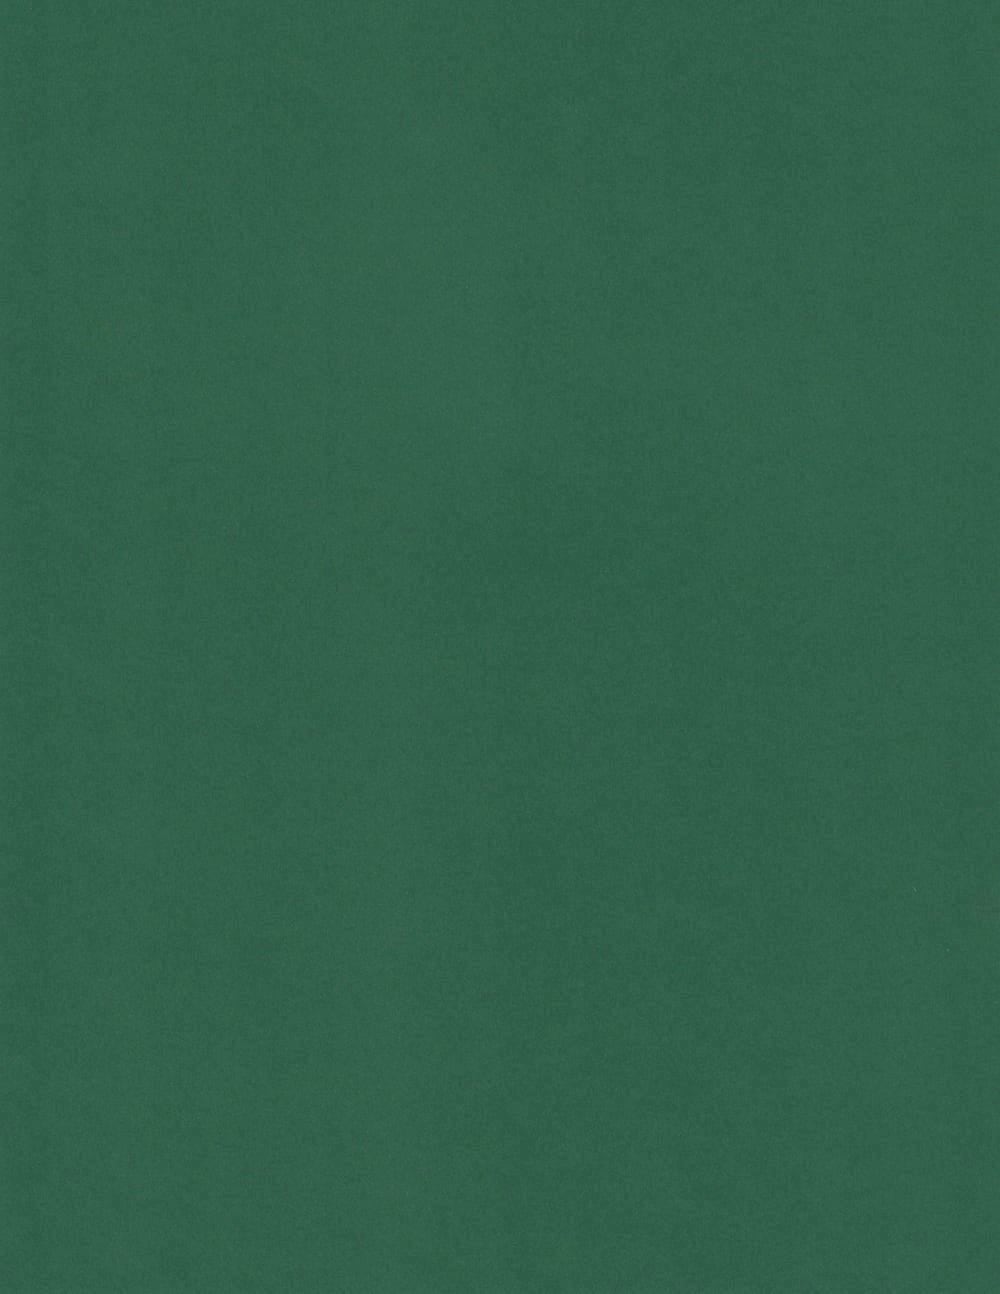 Foglia Sirio | Green Colored Cardstock Paper